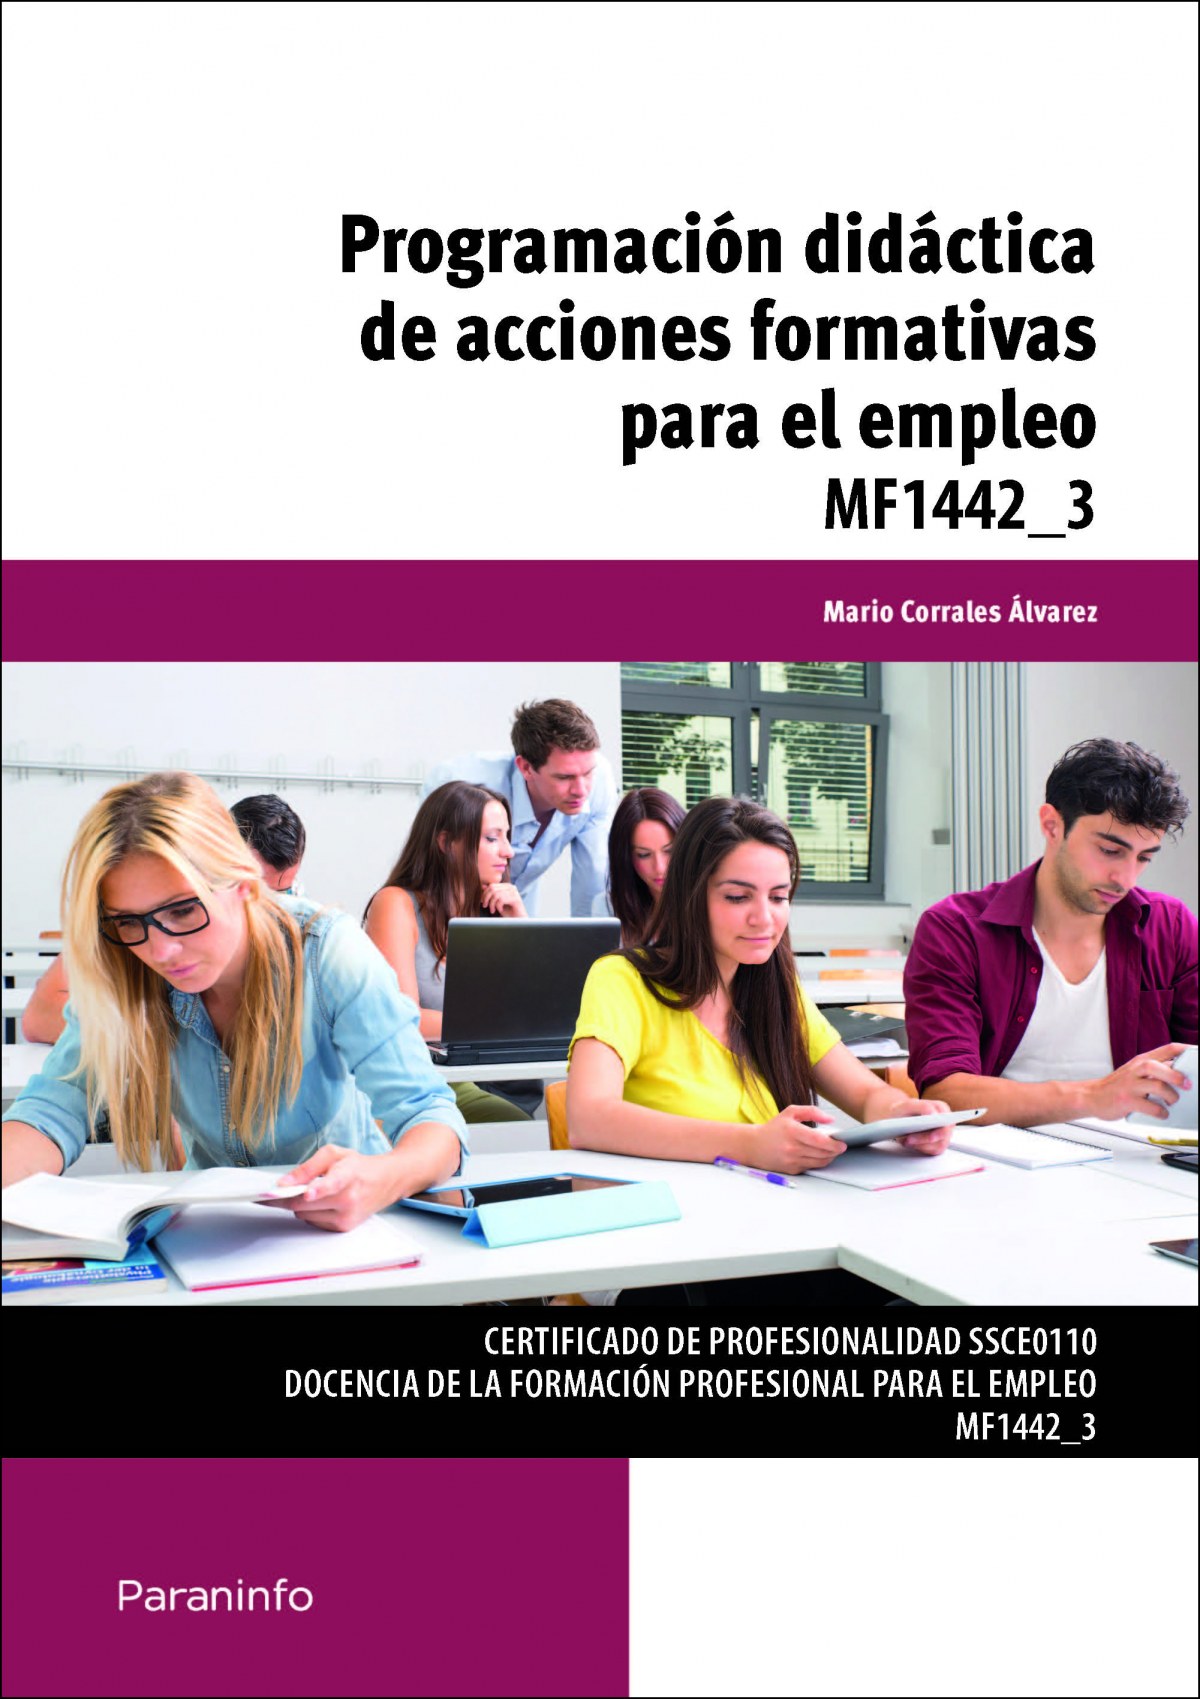 Programación didactica acciones formativas para el empleo - Corrales Álvarez, Mario